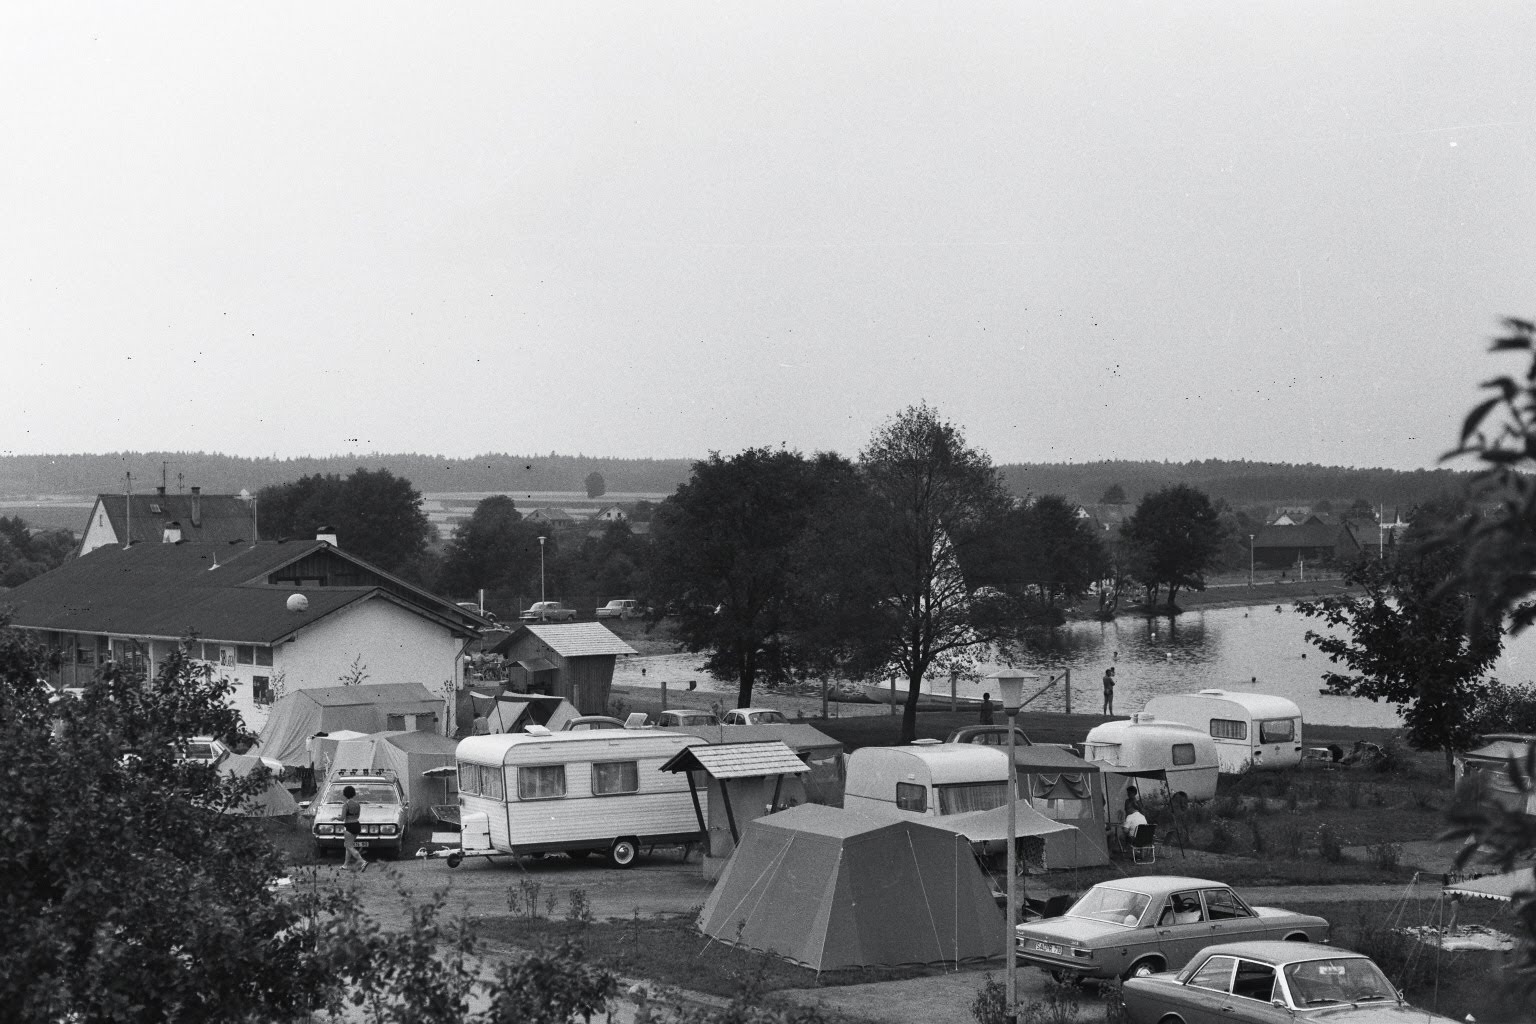 Damals - Neubäuer See Campingplatz Zelte Wohnwagen und Autos früher